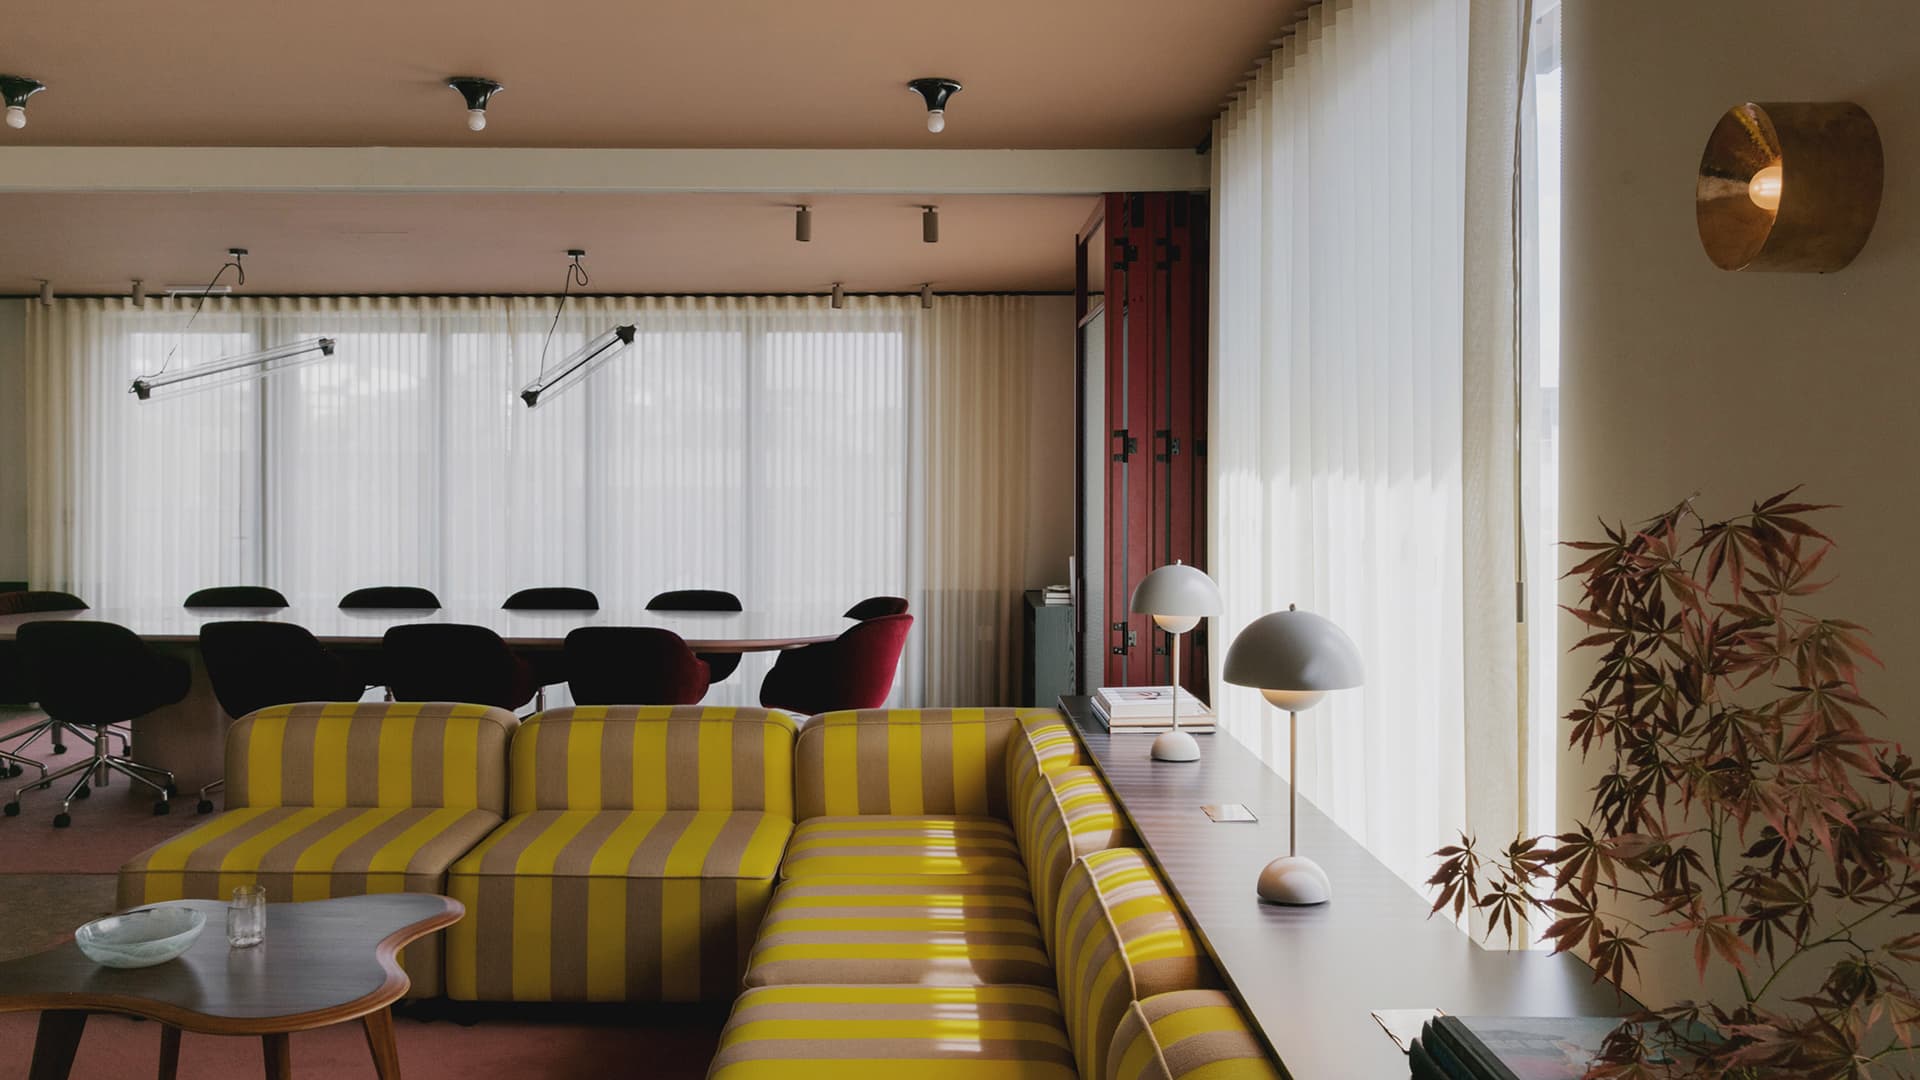 Уютный офис в эстетике американских частных домов 50-х годов – проект студии Daytrip